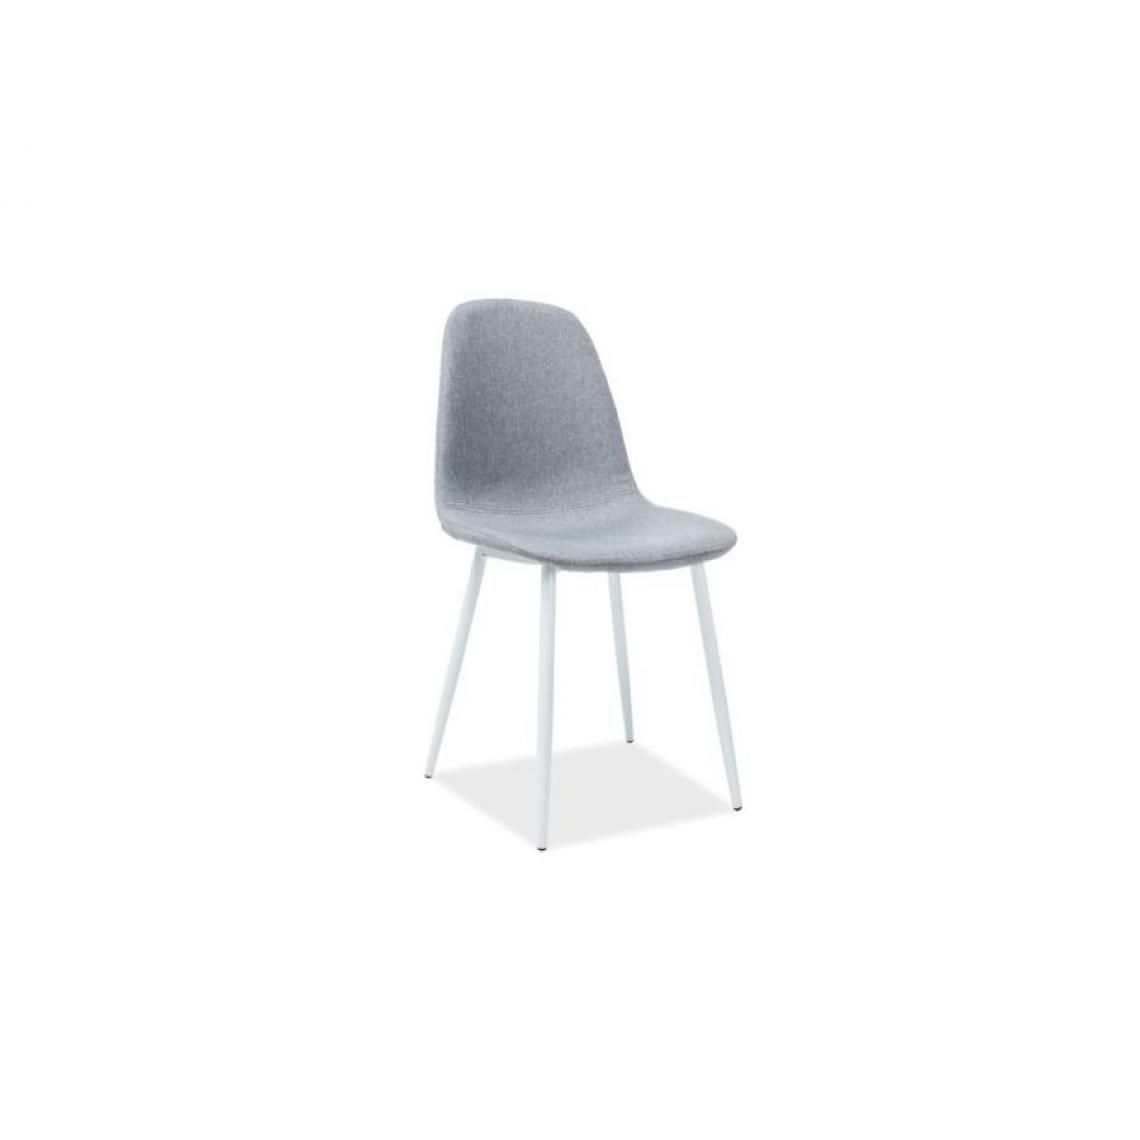 Hucoco - FRANZI | Chaise de style scandinave avec base en métal | Salle à mager Salon Bureau | 86x44x39cm | Tissu haute qualité - Gris - Chaises